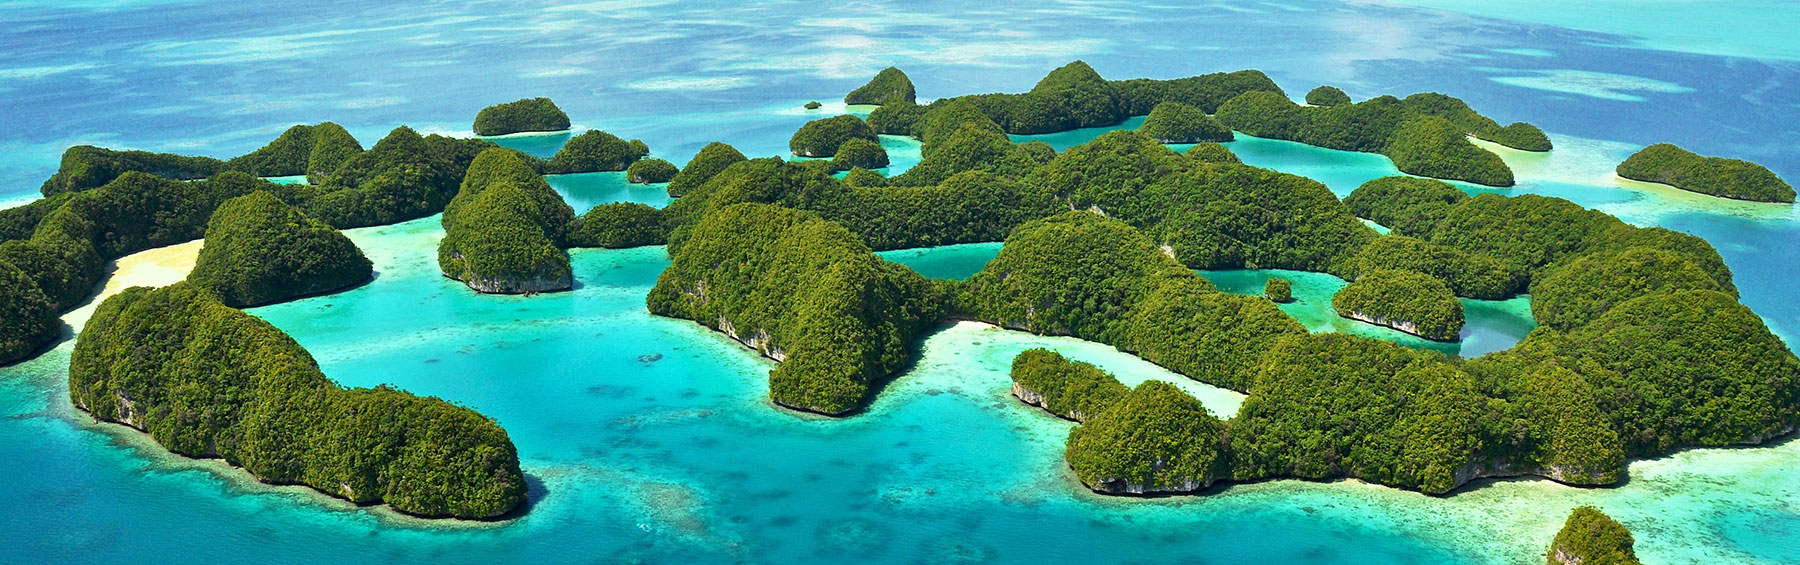 The Palau National Marine Sanctuary